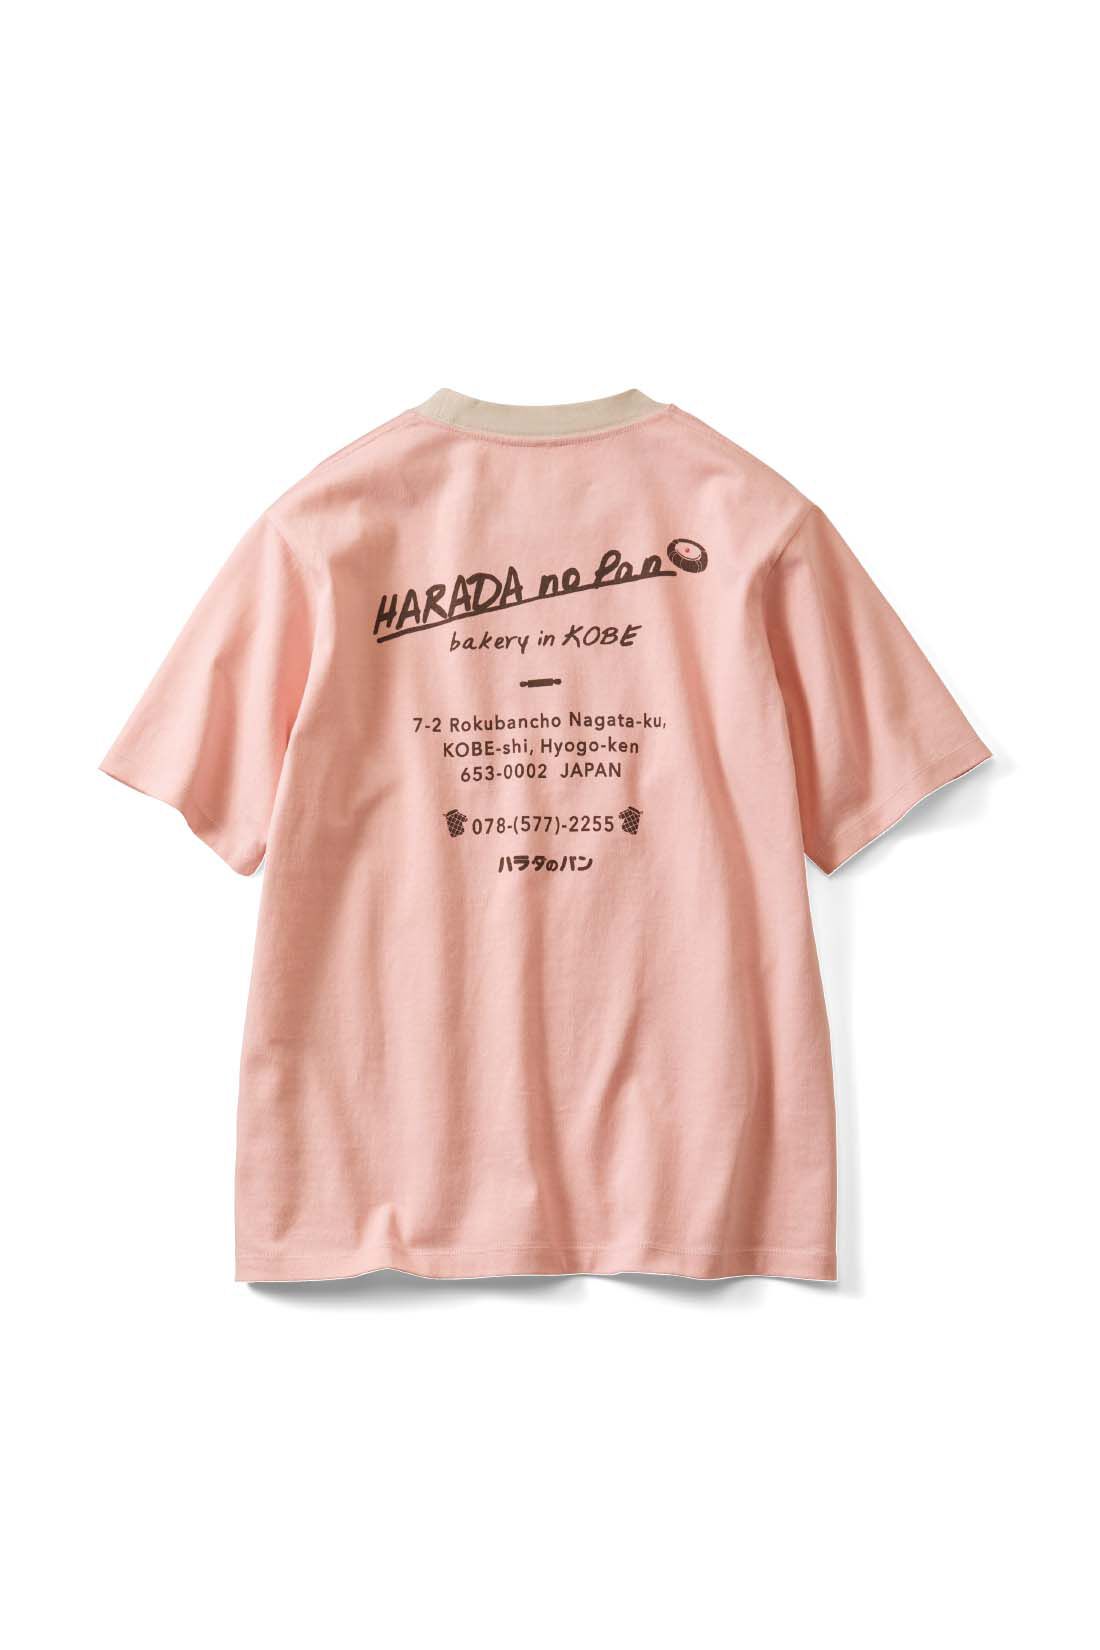 Live in  comfort|Live love cottonプロジェクト リブ イン コンフォート神戸のベーカリーハラダのパンさんとつくったオーガニックコットンのレトロかわいいTシャツ〈ジェイブルー〉|back